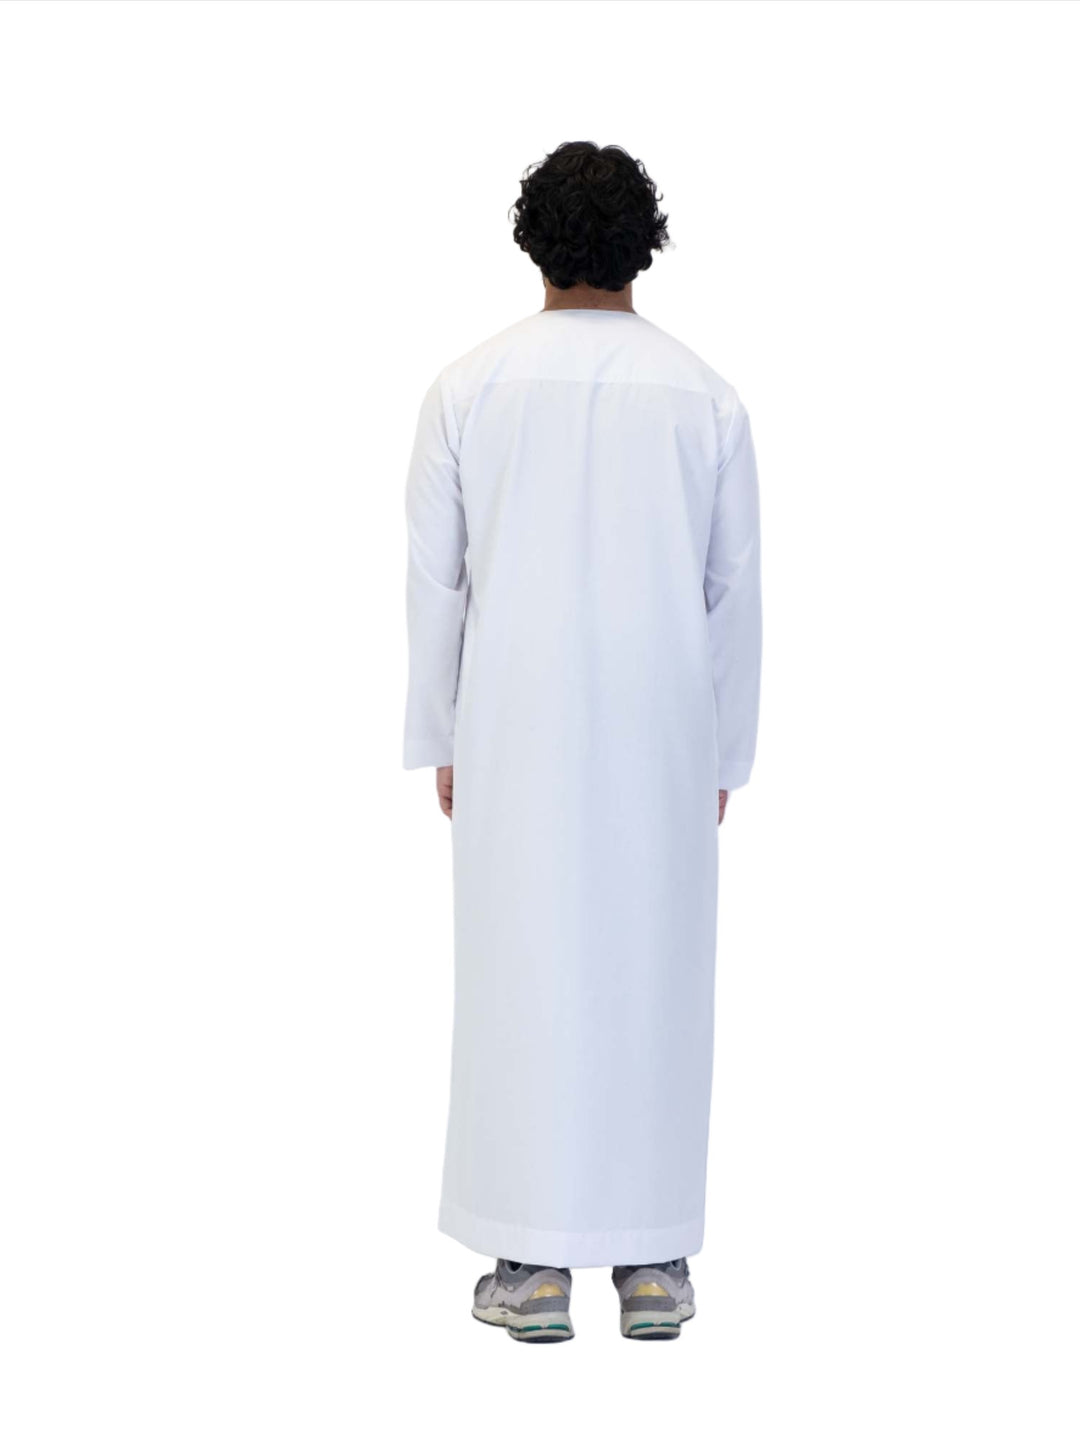 ثوب عماني فلسطيني مع شرابة - كم طويل